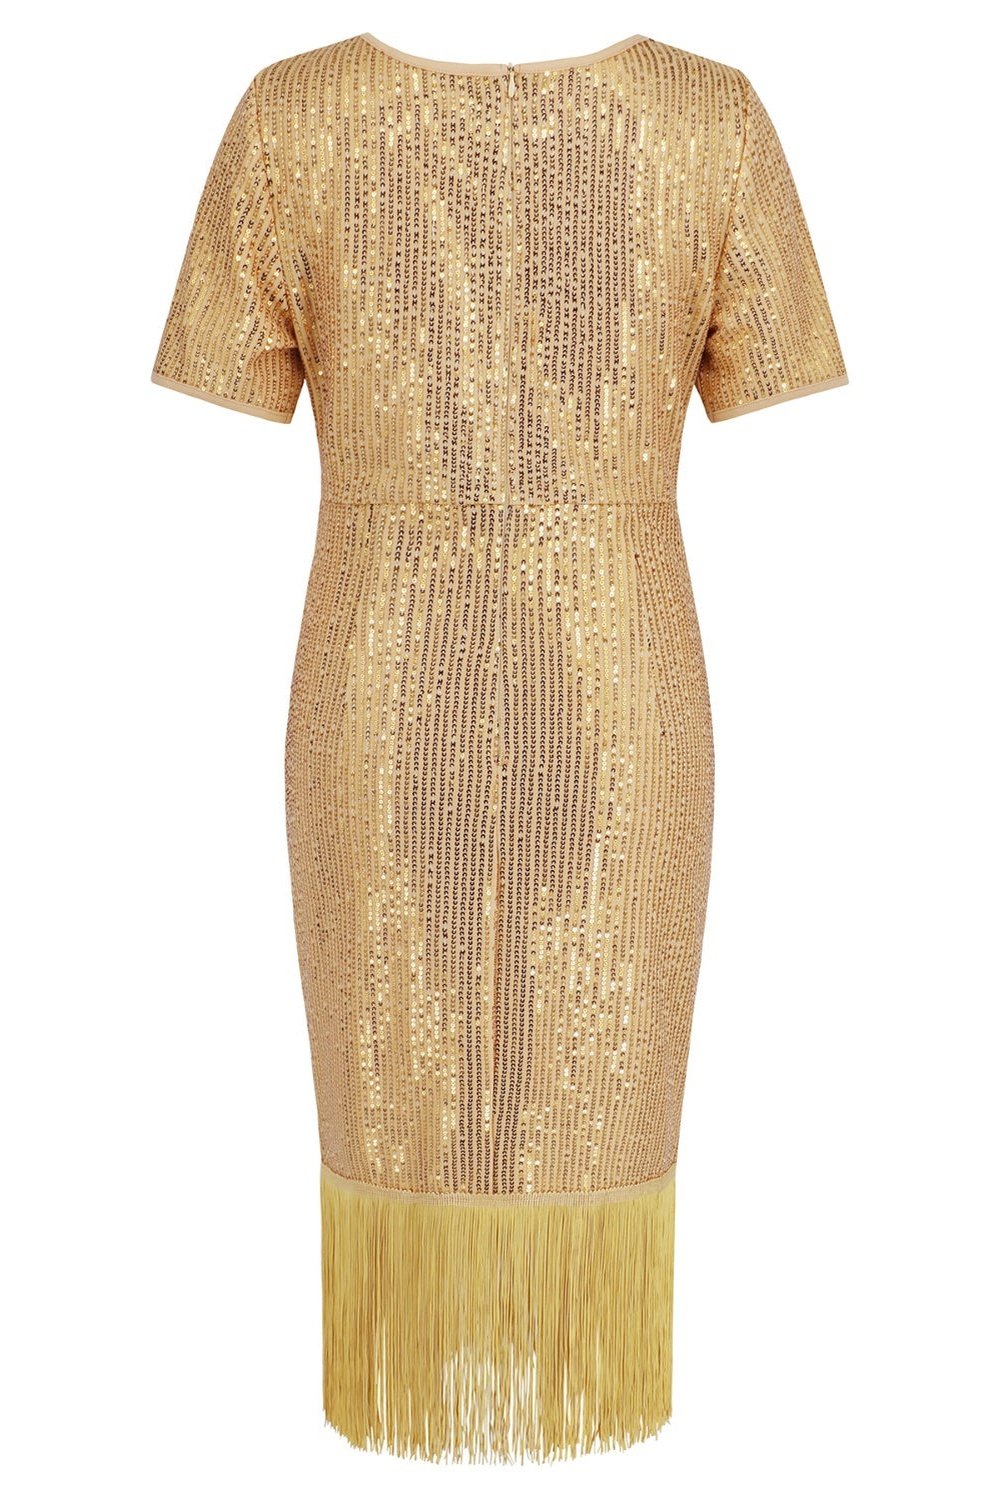 Tassel Sequin Short Sleeve Dress - Cocktail Dresses - FITGGINS